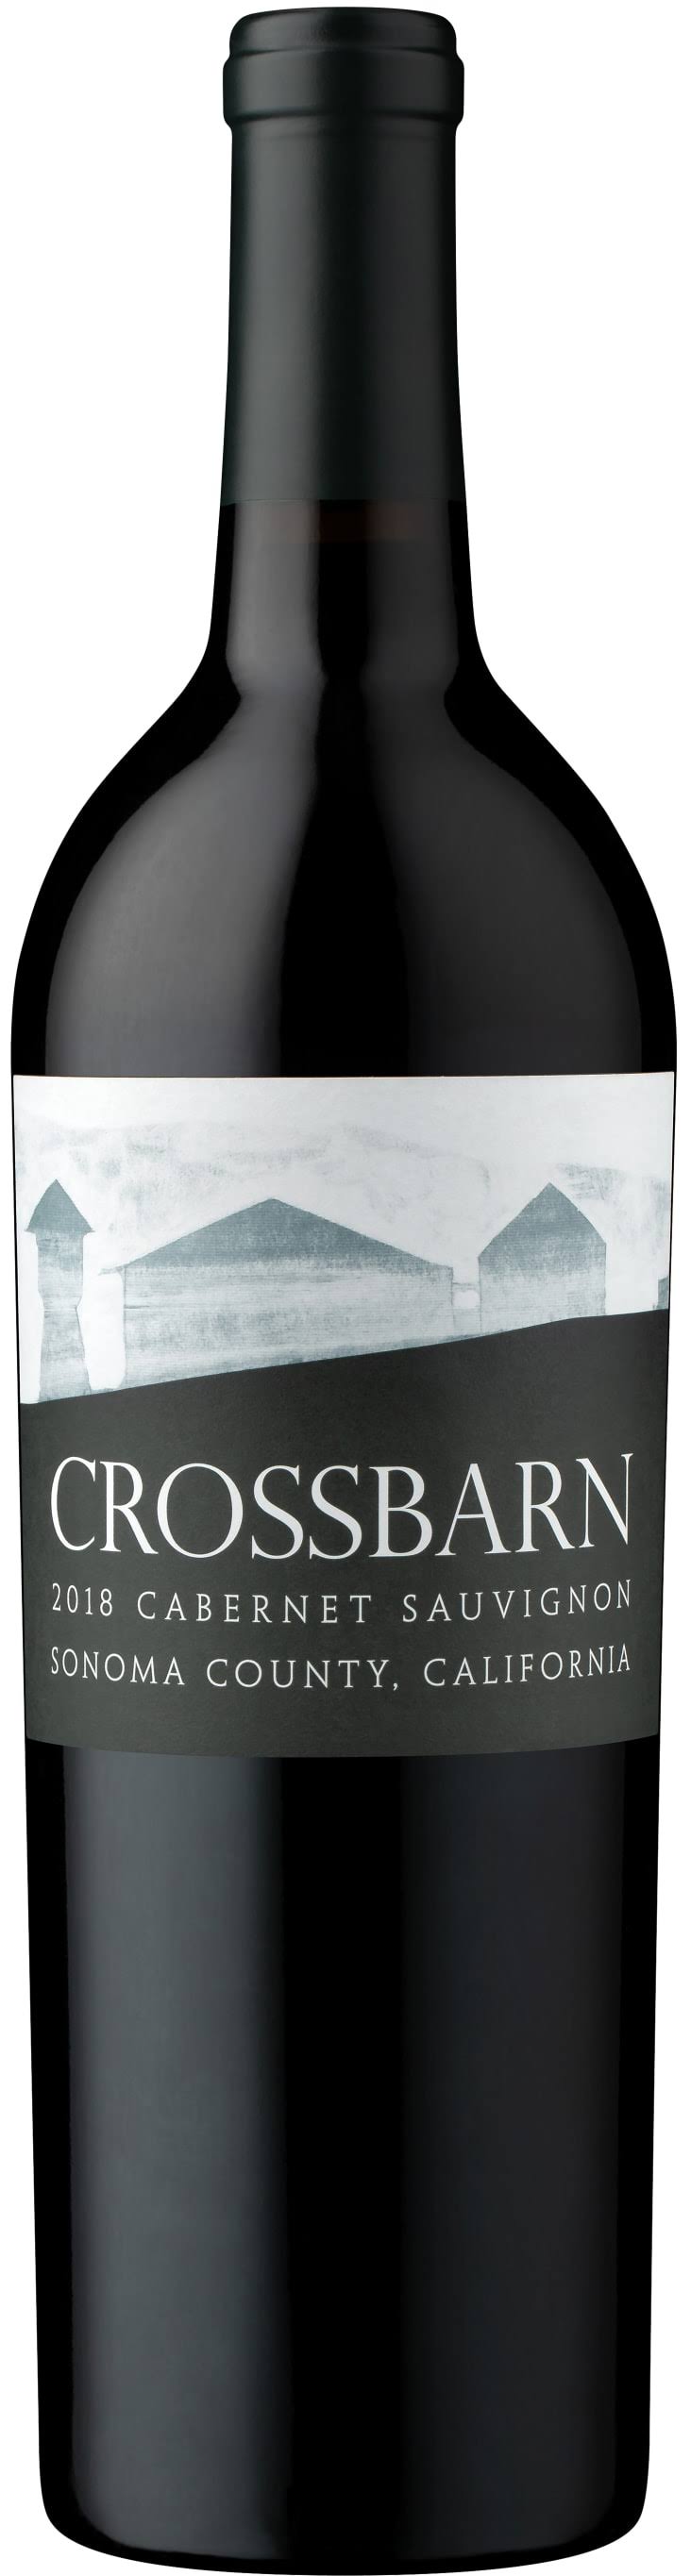 Crossbarn Cabernet Sauvignon, Sonoma County 2018 / 750 ml.